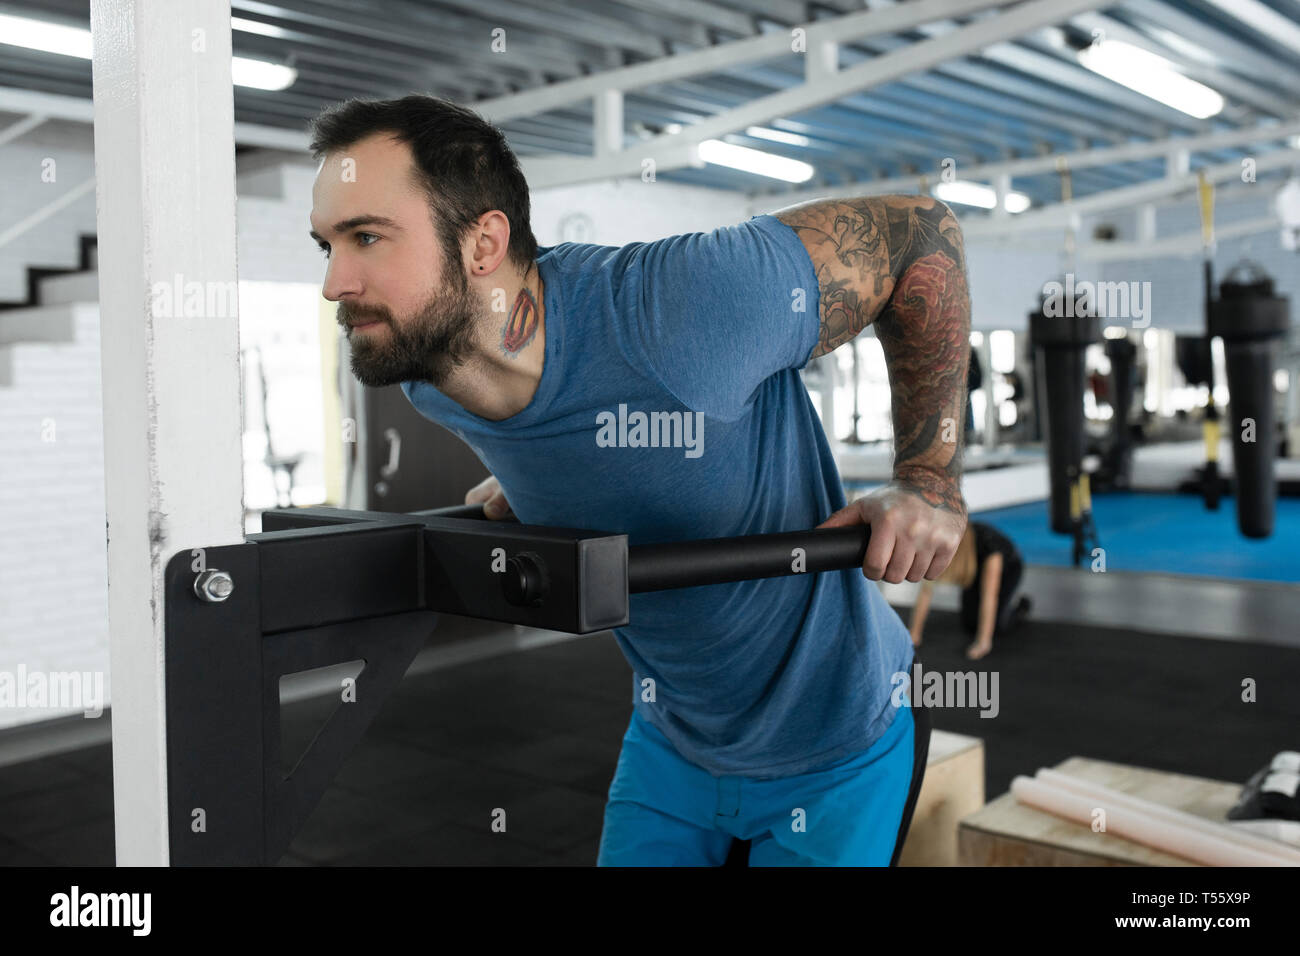 Mitad hombre adulto con máquina de ejercicio en el gimnasio Foto de stock